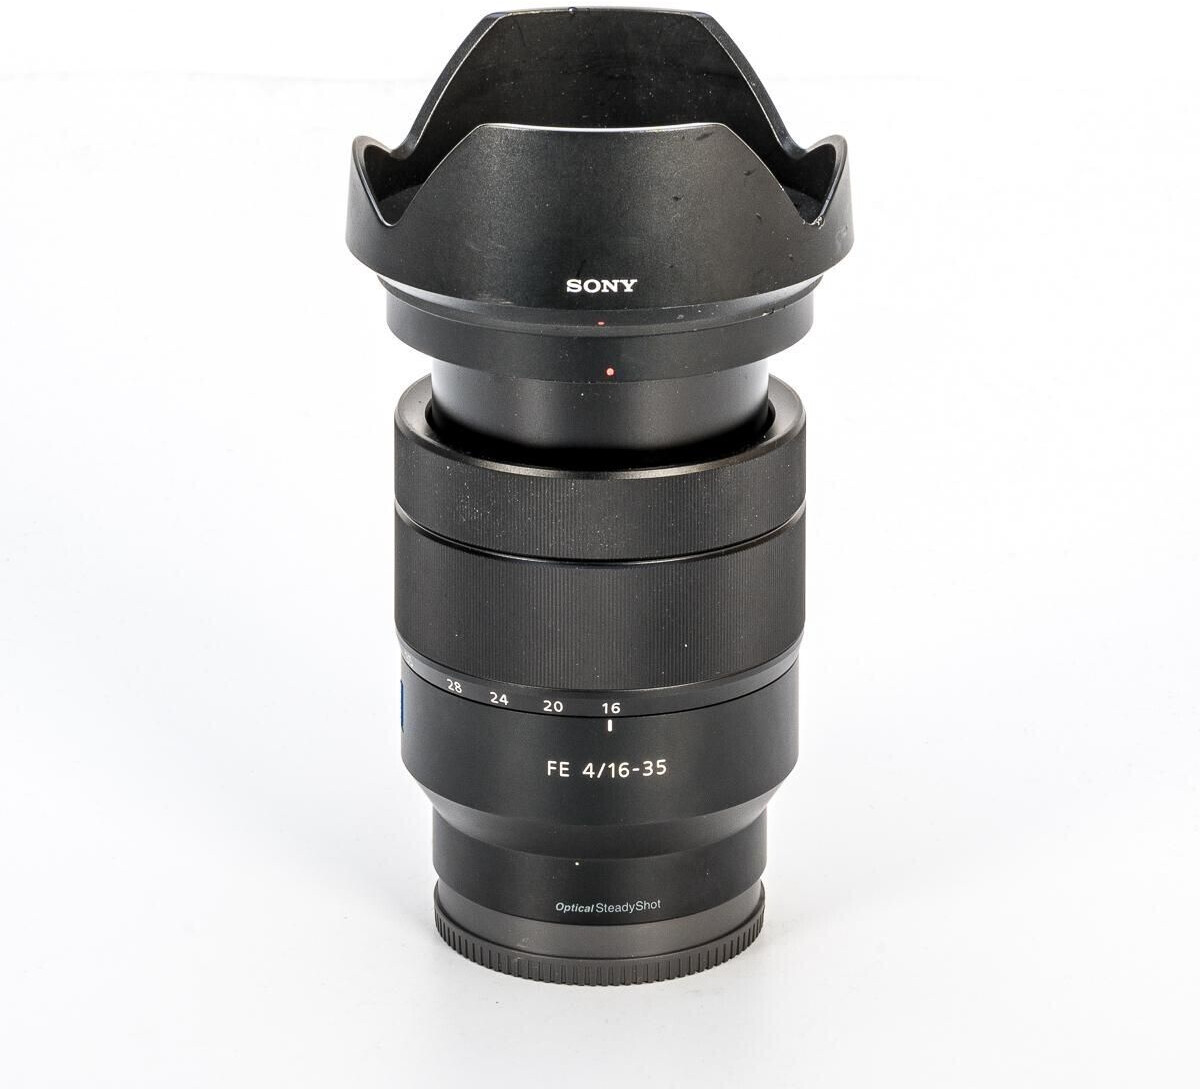 オープニング 大放出セール SONY Lens T*FE 16-35 F4 ZA for Vario-Tessar OSS SEL1635Z ZA  SEL1635Z ZEISS F4 カメラ